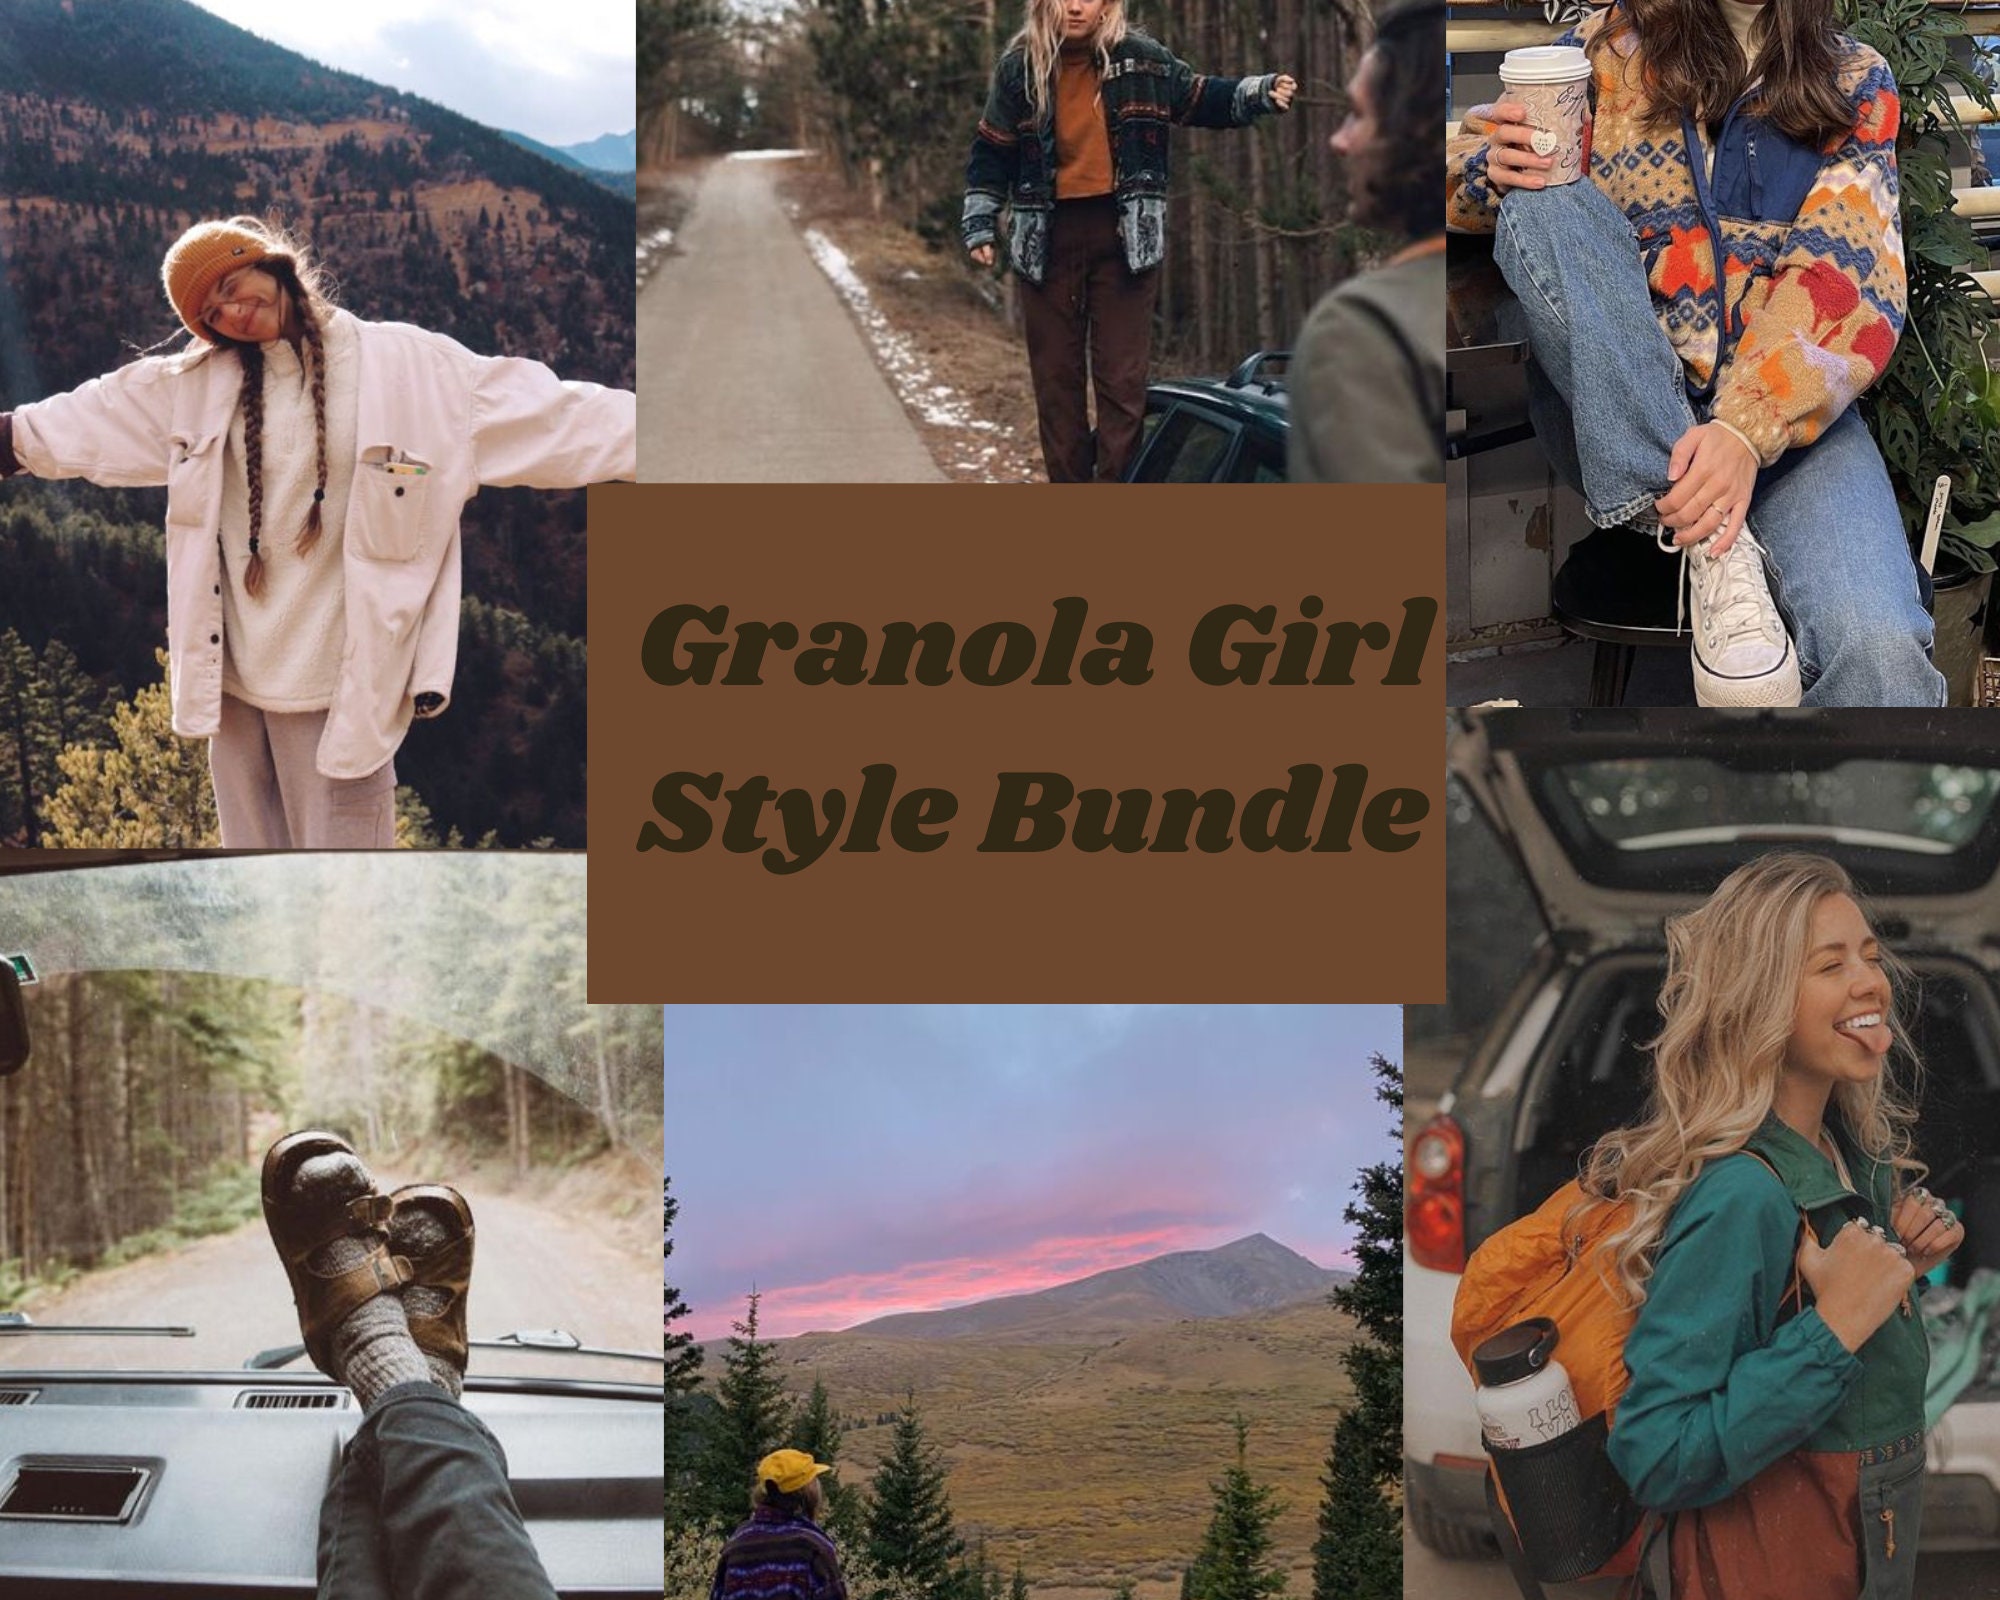 Granola Girl Style Bundle aesthetic clothing mystery box